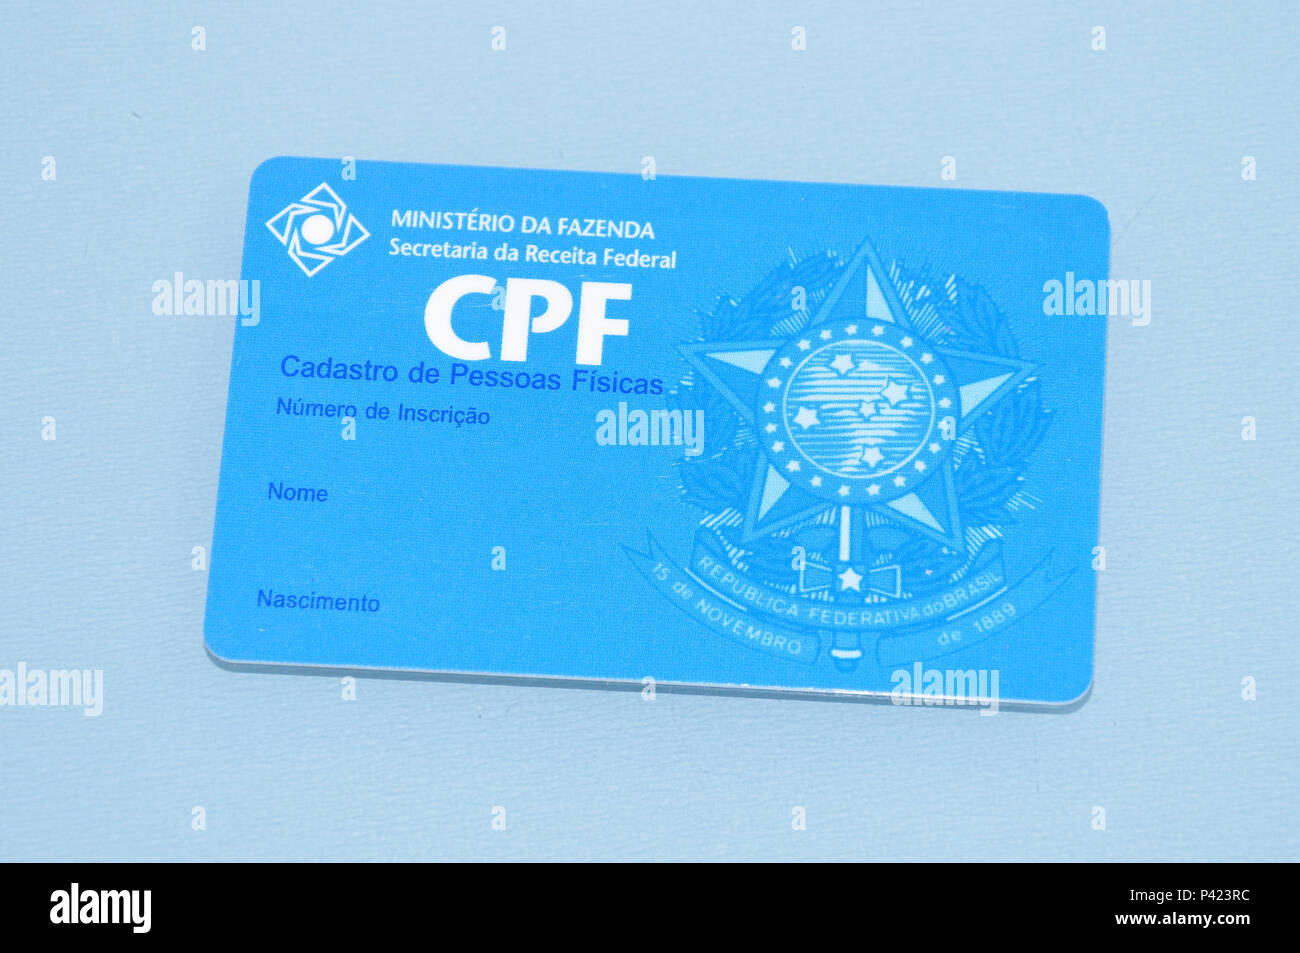 Cartão de CPF (Cadastro de Pessoa Física) sem dados. Stockfoto